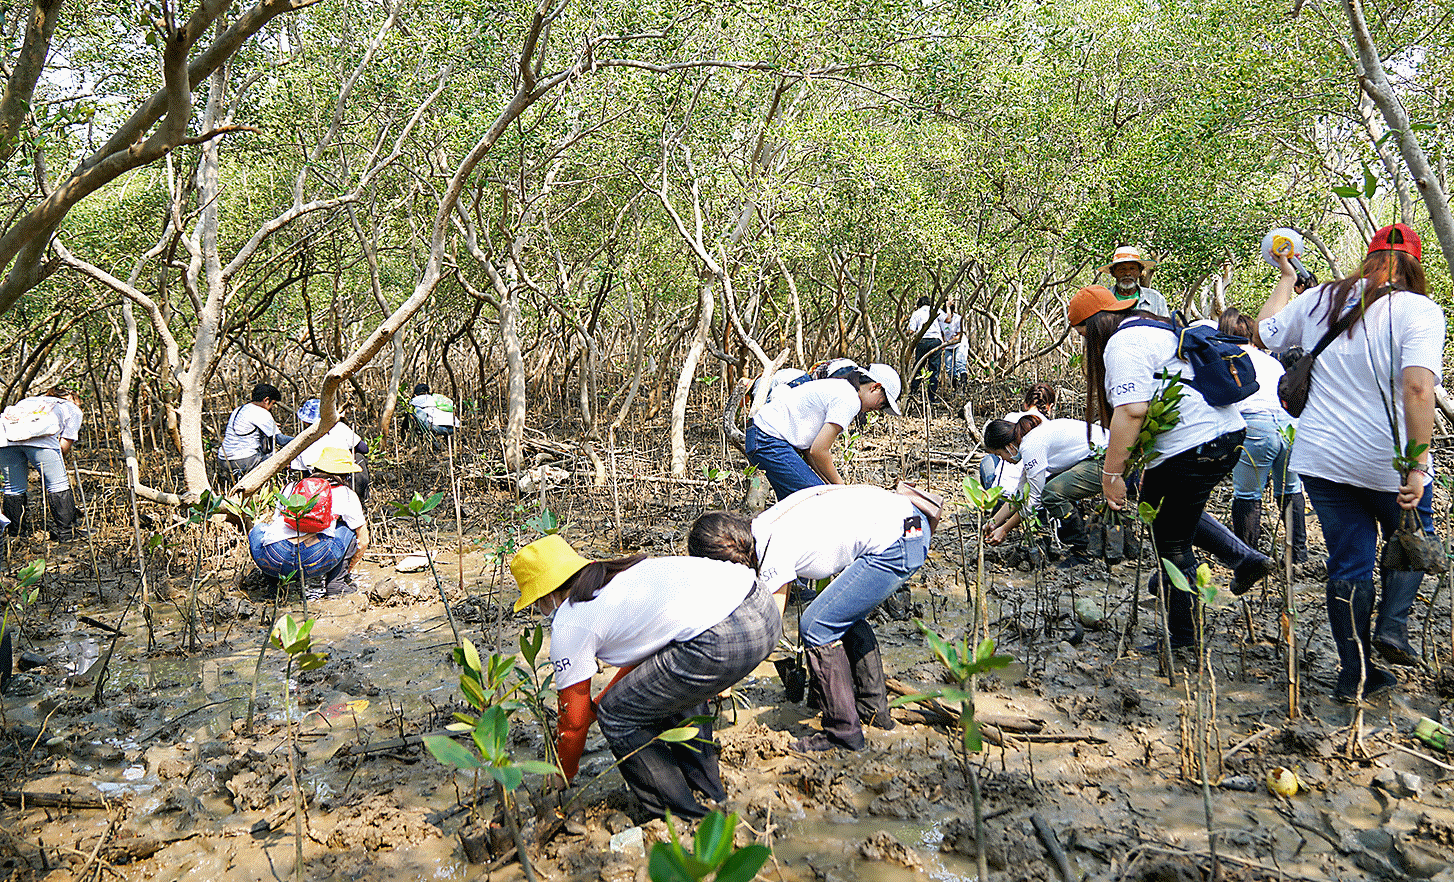 Fotografija koja prikazuje lokalne aktivnosti sadnje mangrova u kojima sudjeluju zaposlenici tajlandskog postrojenja